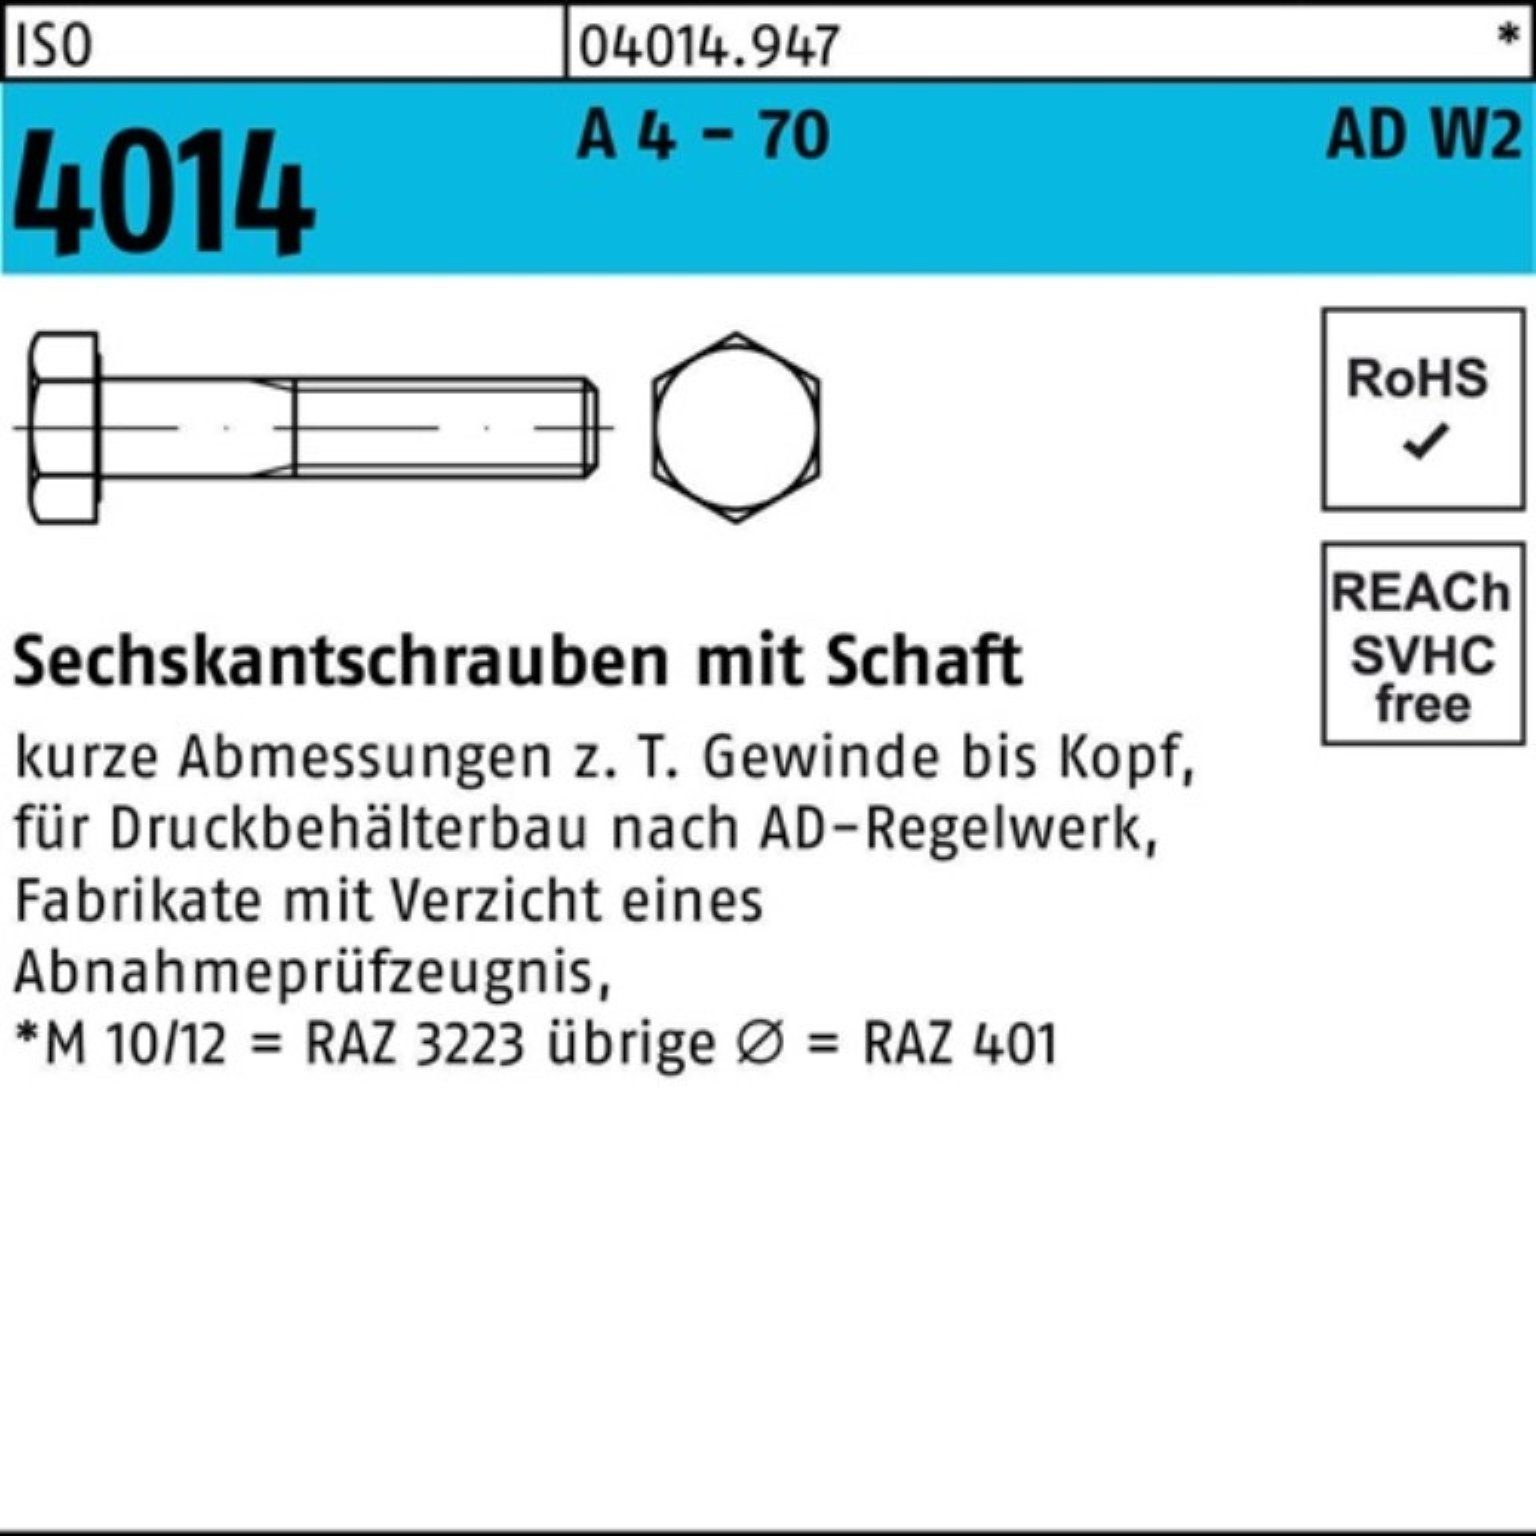 Bufab Sechskantschraube 100er Pack Sechskantschraube ISO 4014 Schaft M12x 100 A 4 - 70 AD-W2 2